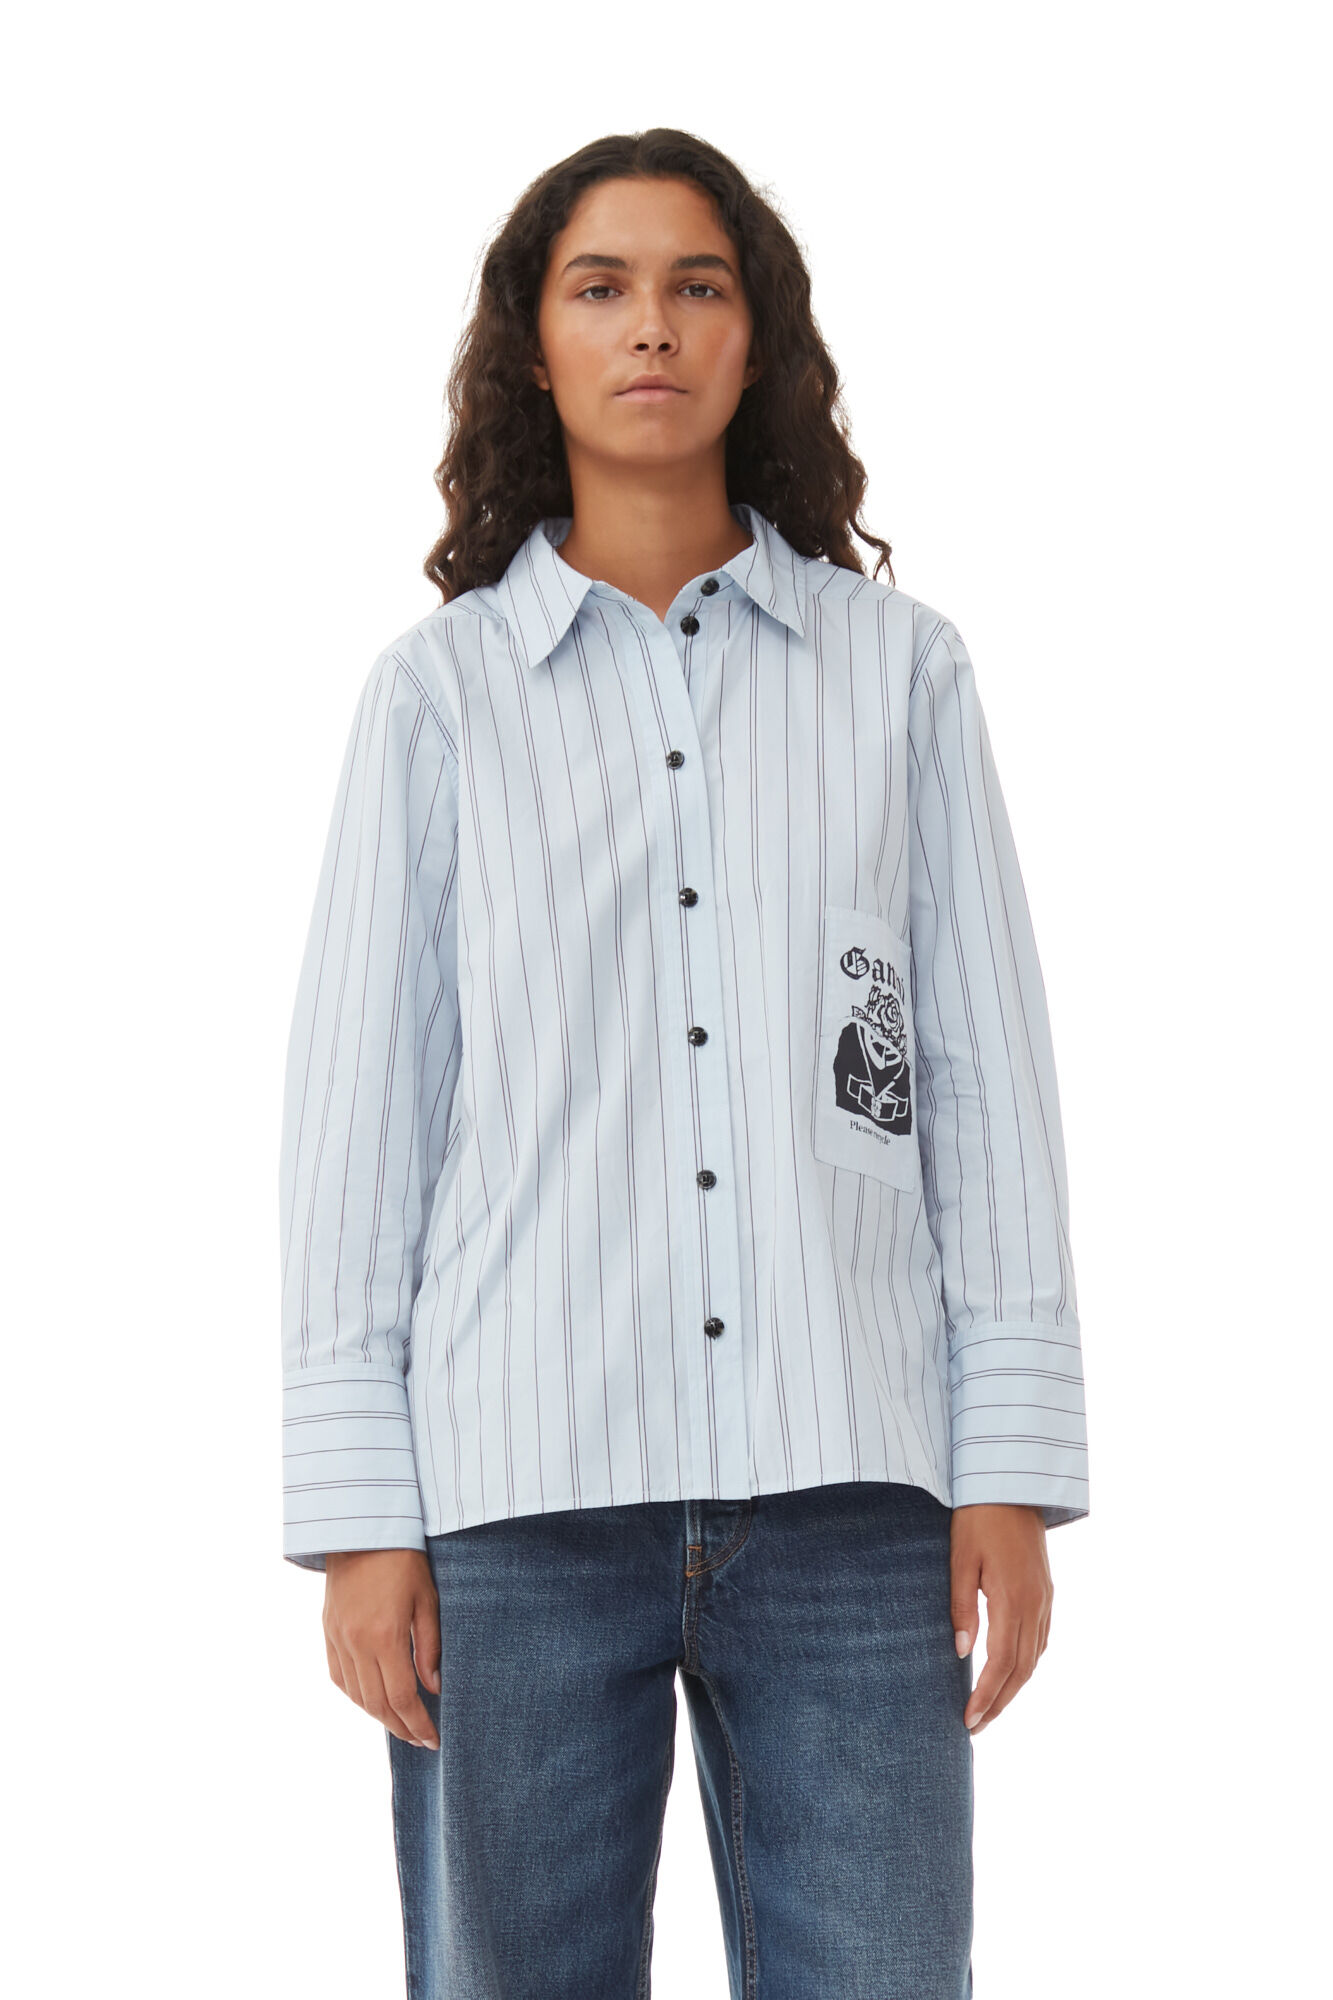 Ganni Re-cut Striped Cotton Shirt